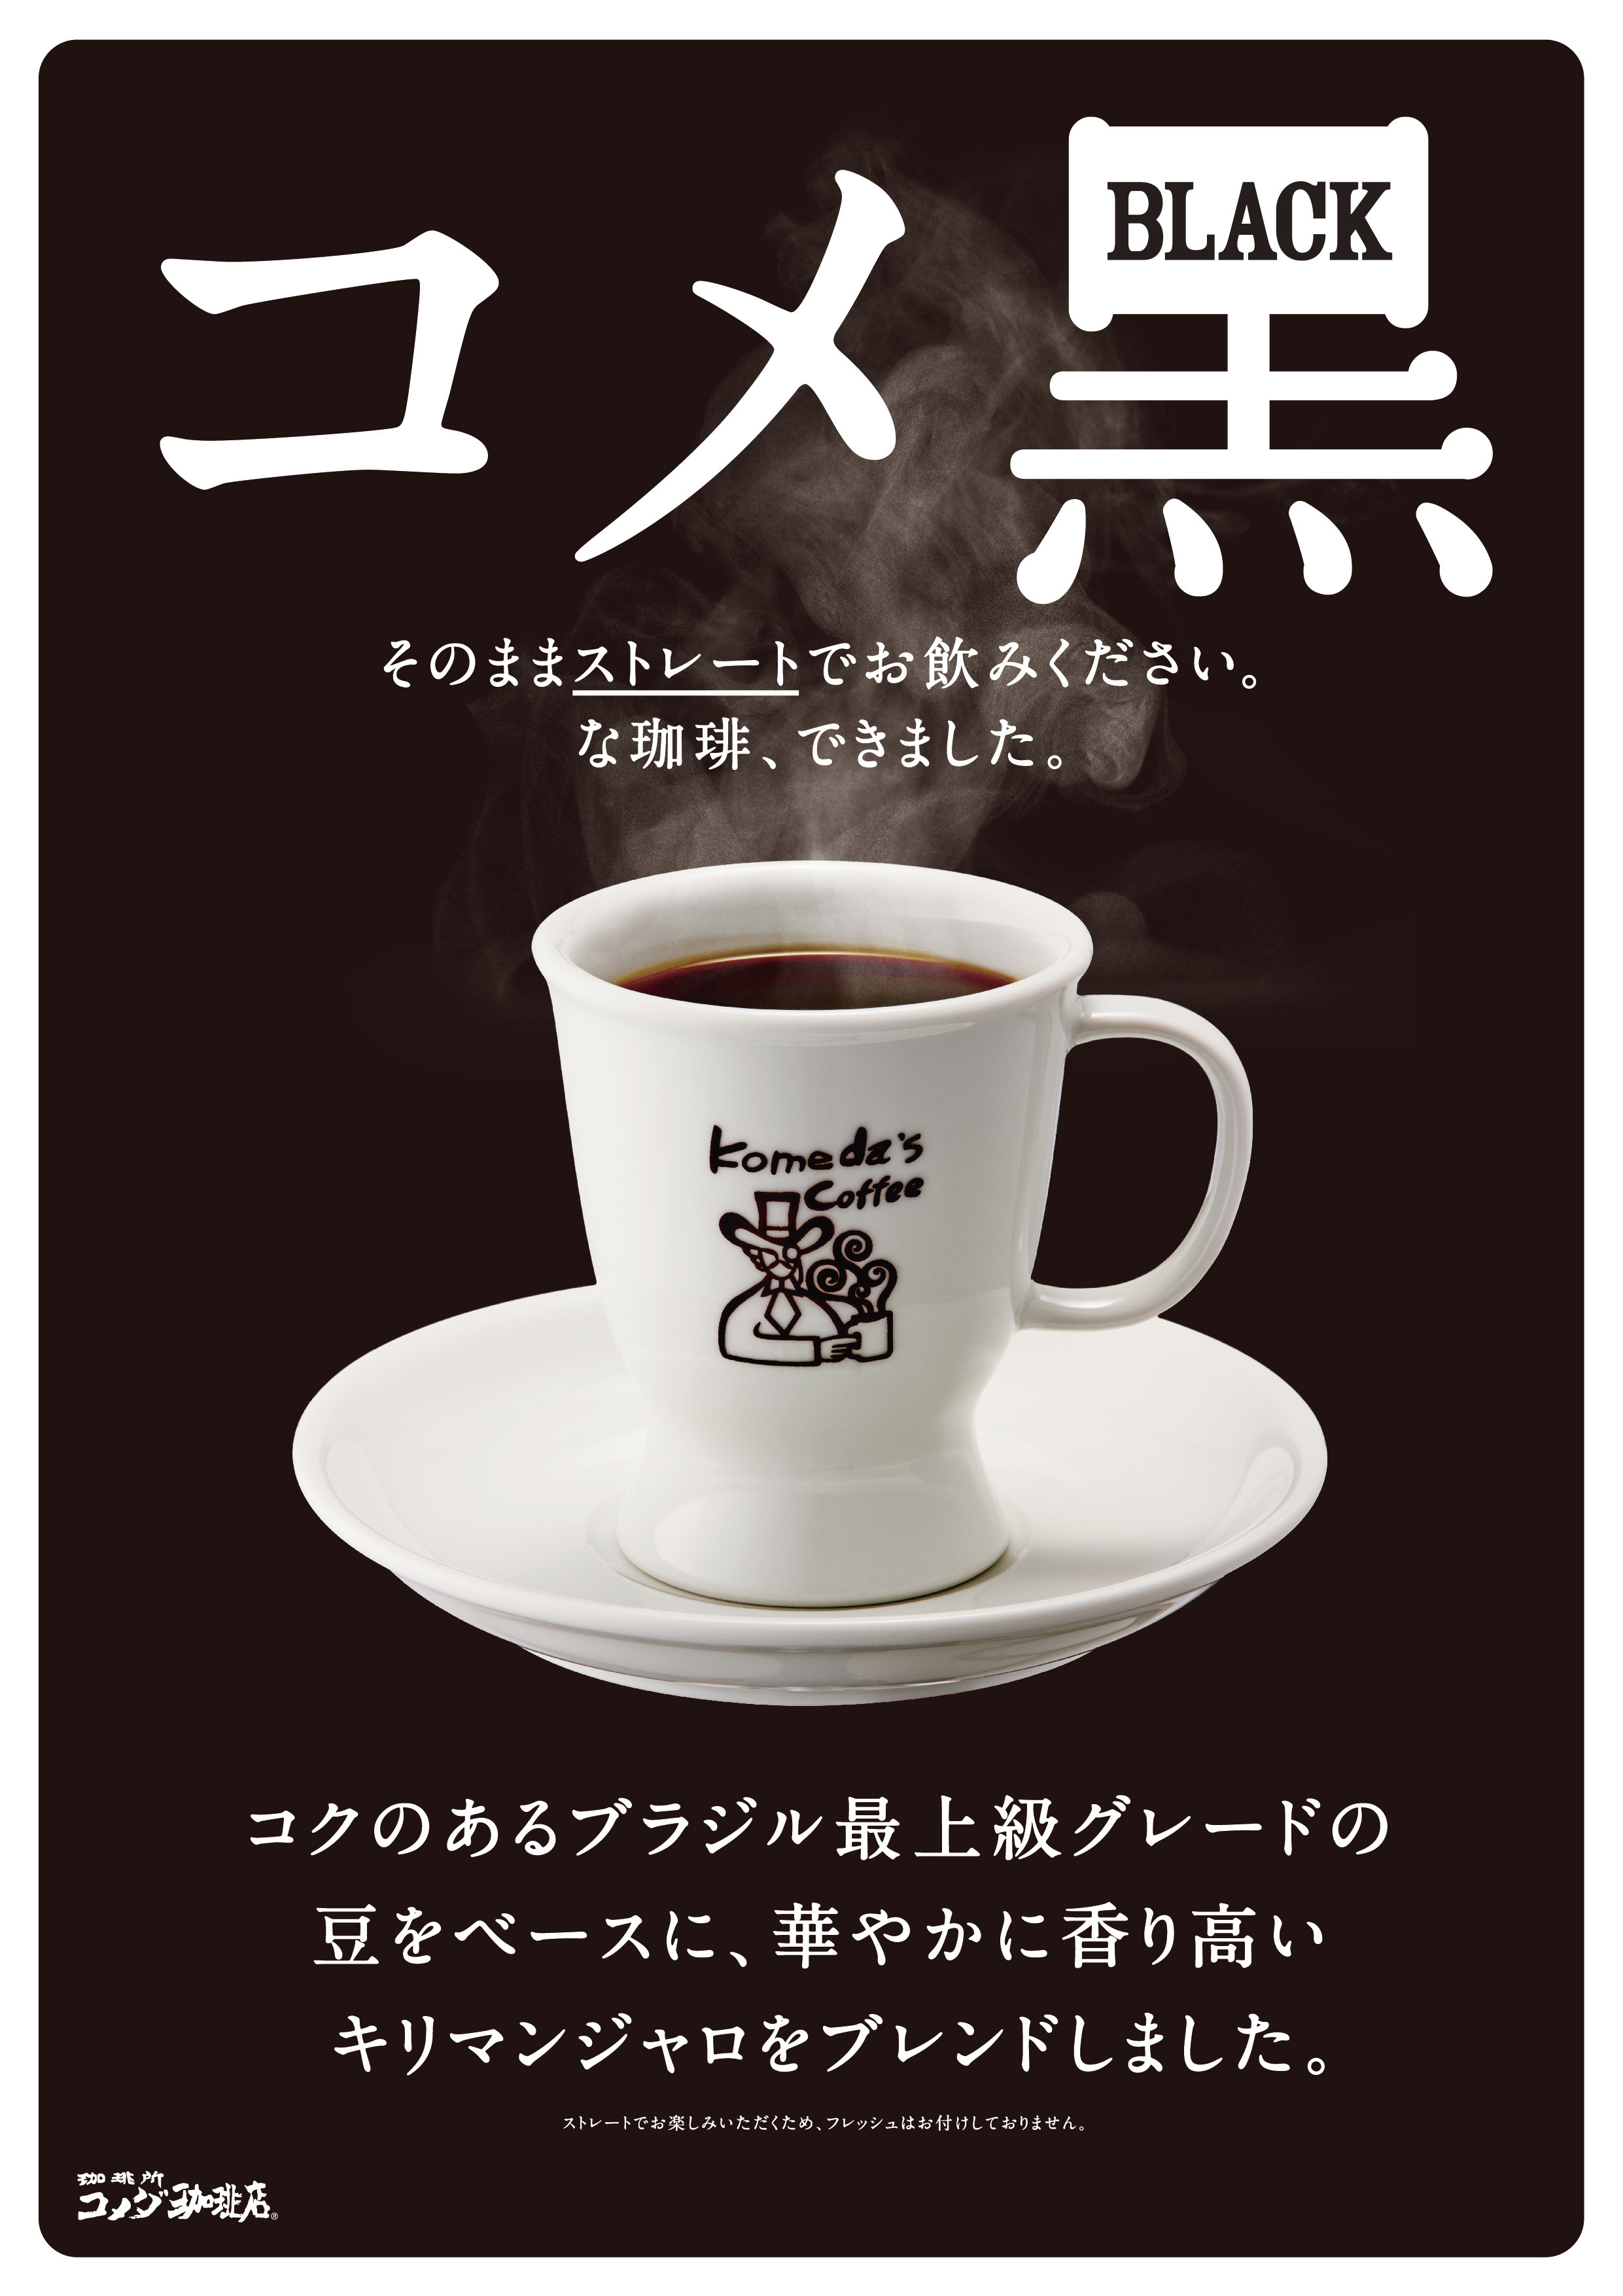 プレスリリース コメダ珈琲店 新ブレンドコーヒー コメ黒 2 26 月 より順次販売開始 上品な酸味と深いコク 香りを楽しむ1杯 できました Press 毎日新聞